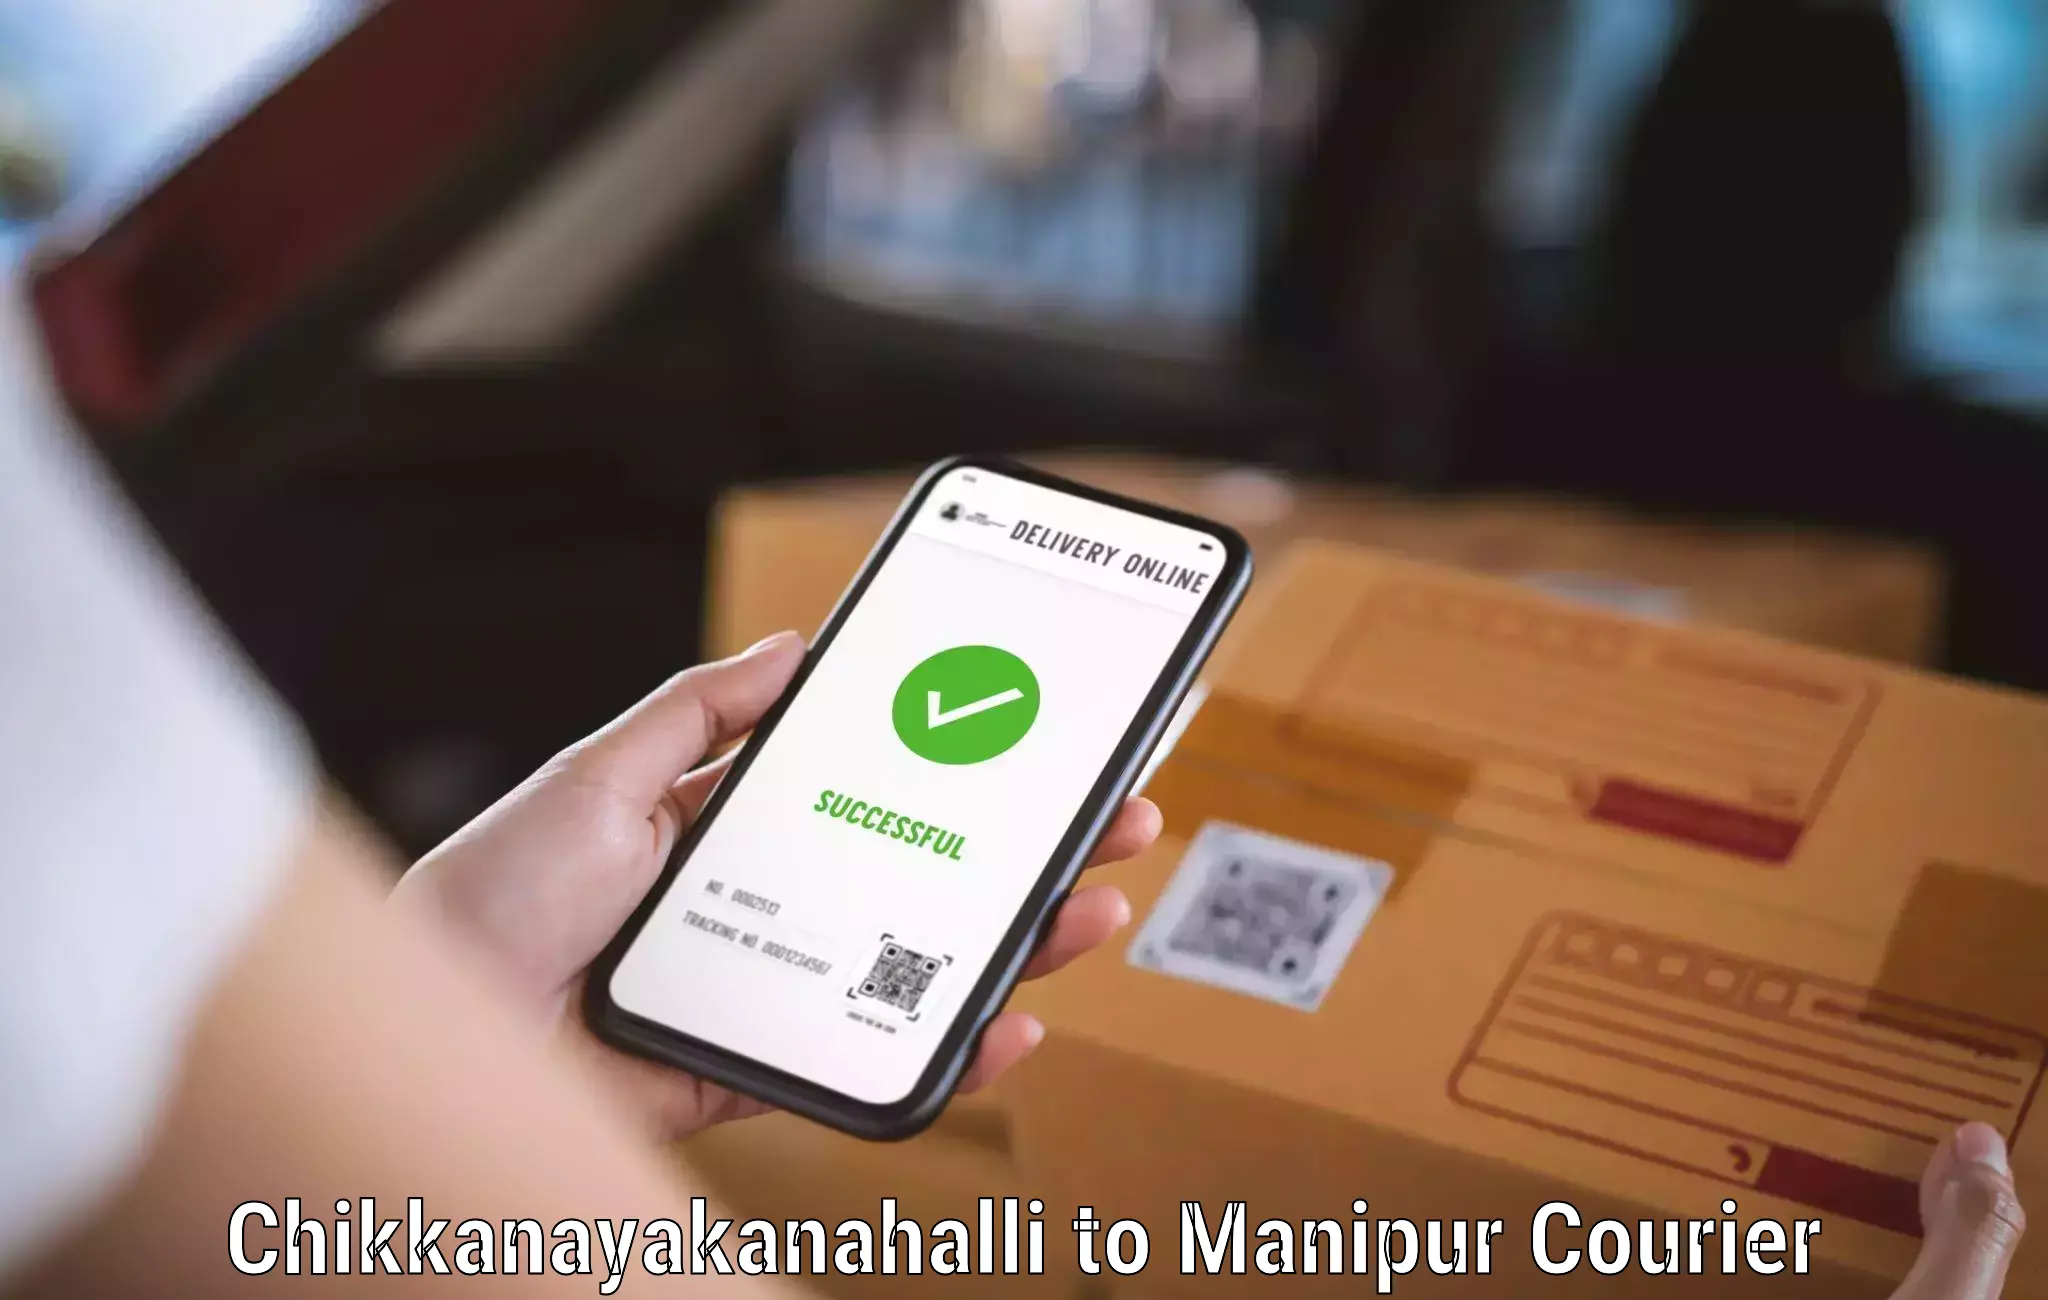 Affordable parcel service Chikkanayakanahalli to Moirang